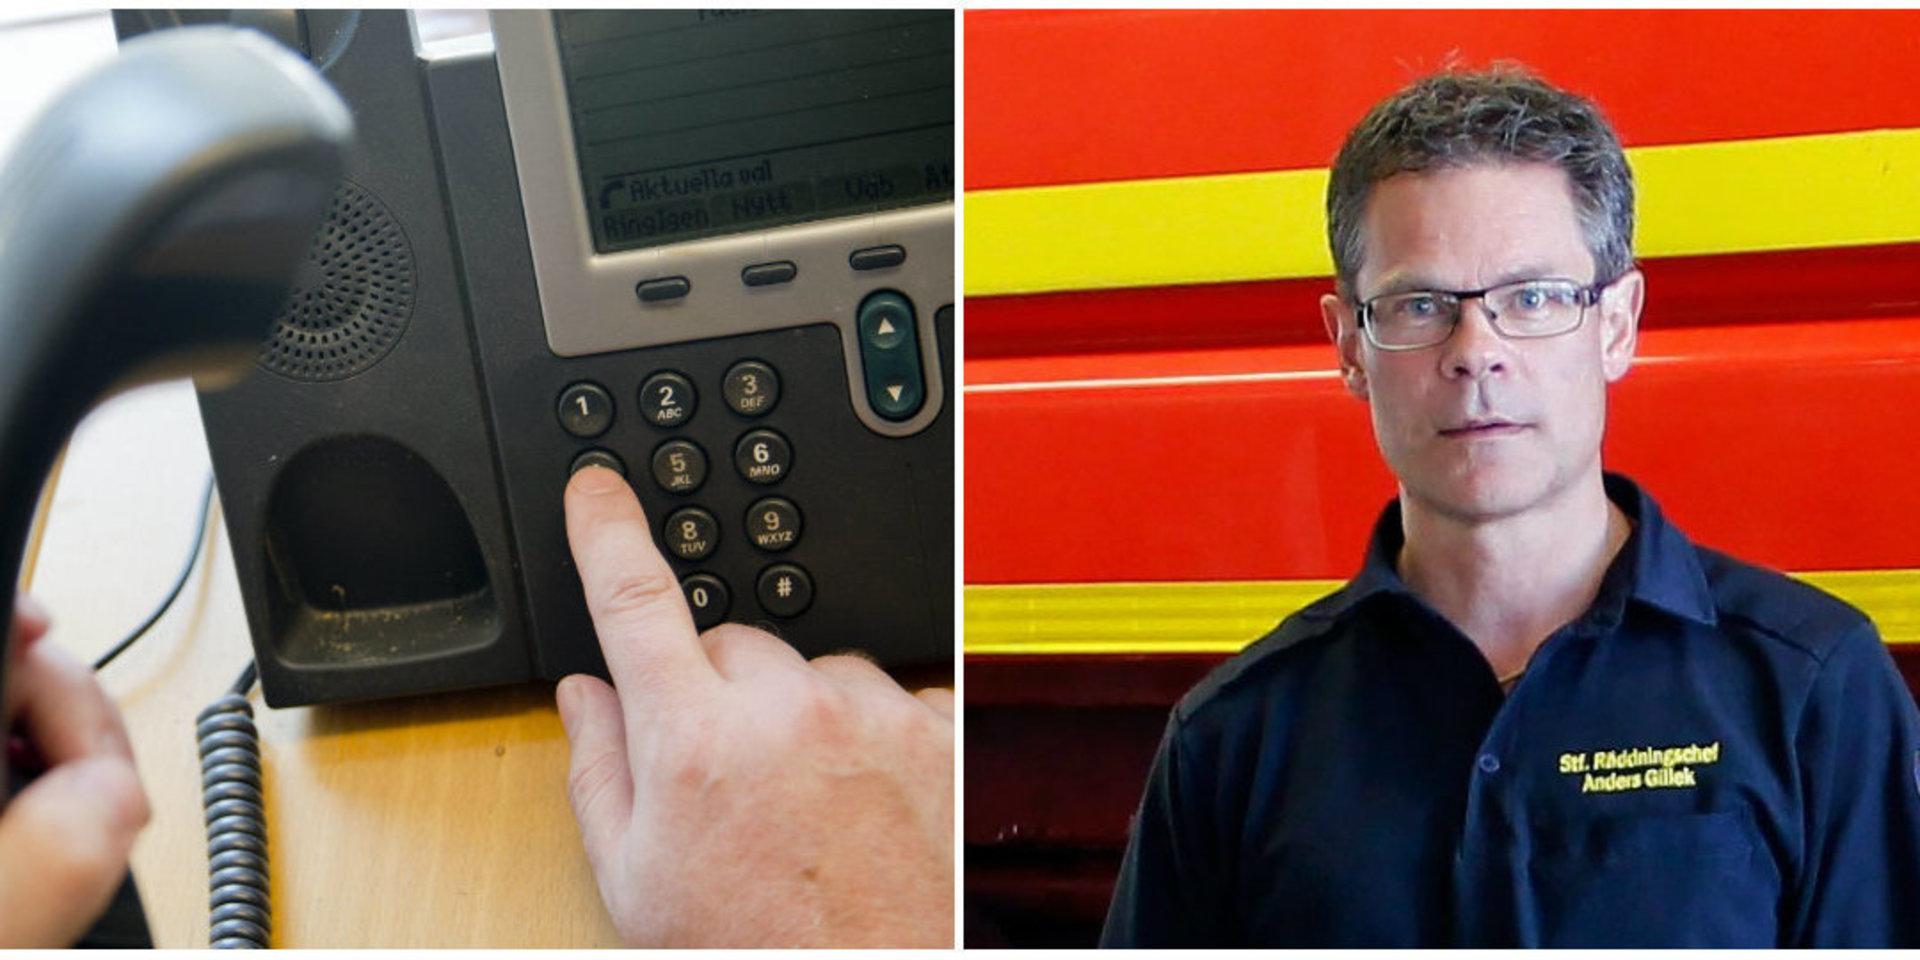 En person har blivit uppringd av någon som påstår sig samla in pengar till räddningstjänsten, säger ställföreträdande räddningschef Anders Gillek vid Närf.